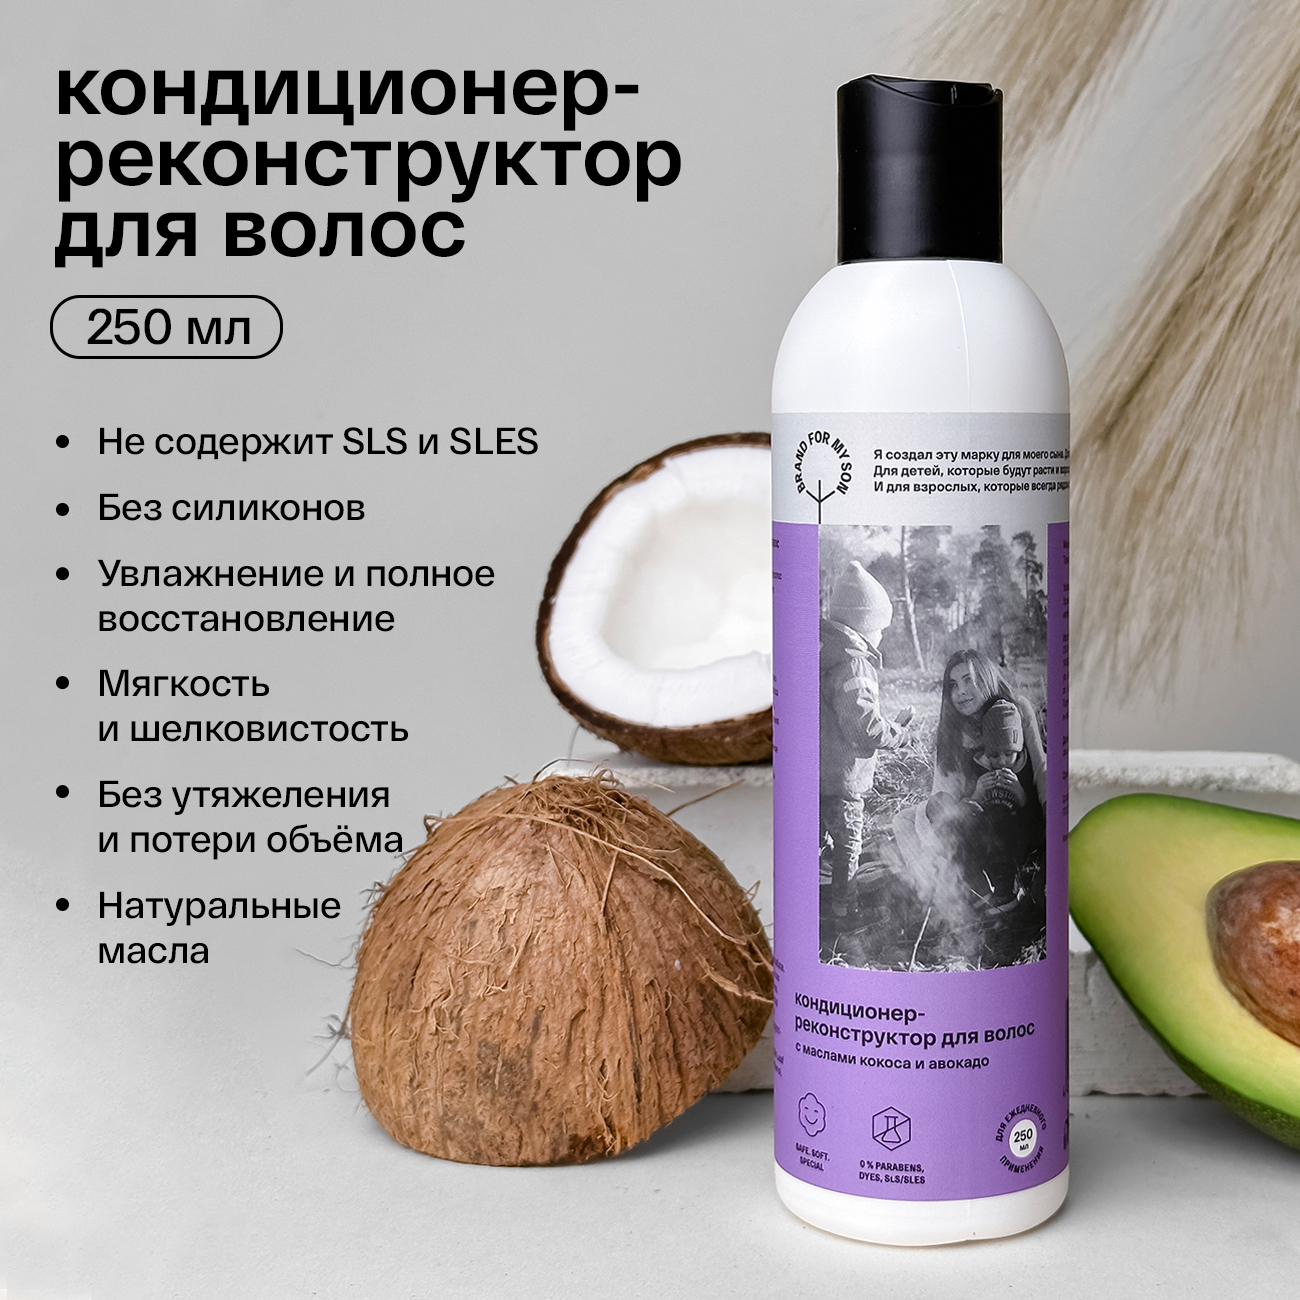 Кондиционер-реконструктор для волос с маслами кокоса и авокадо Brand For My Son , 250 мл